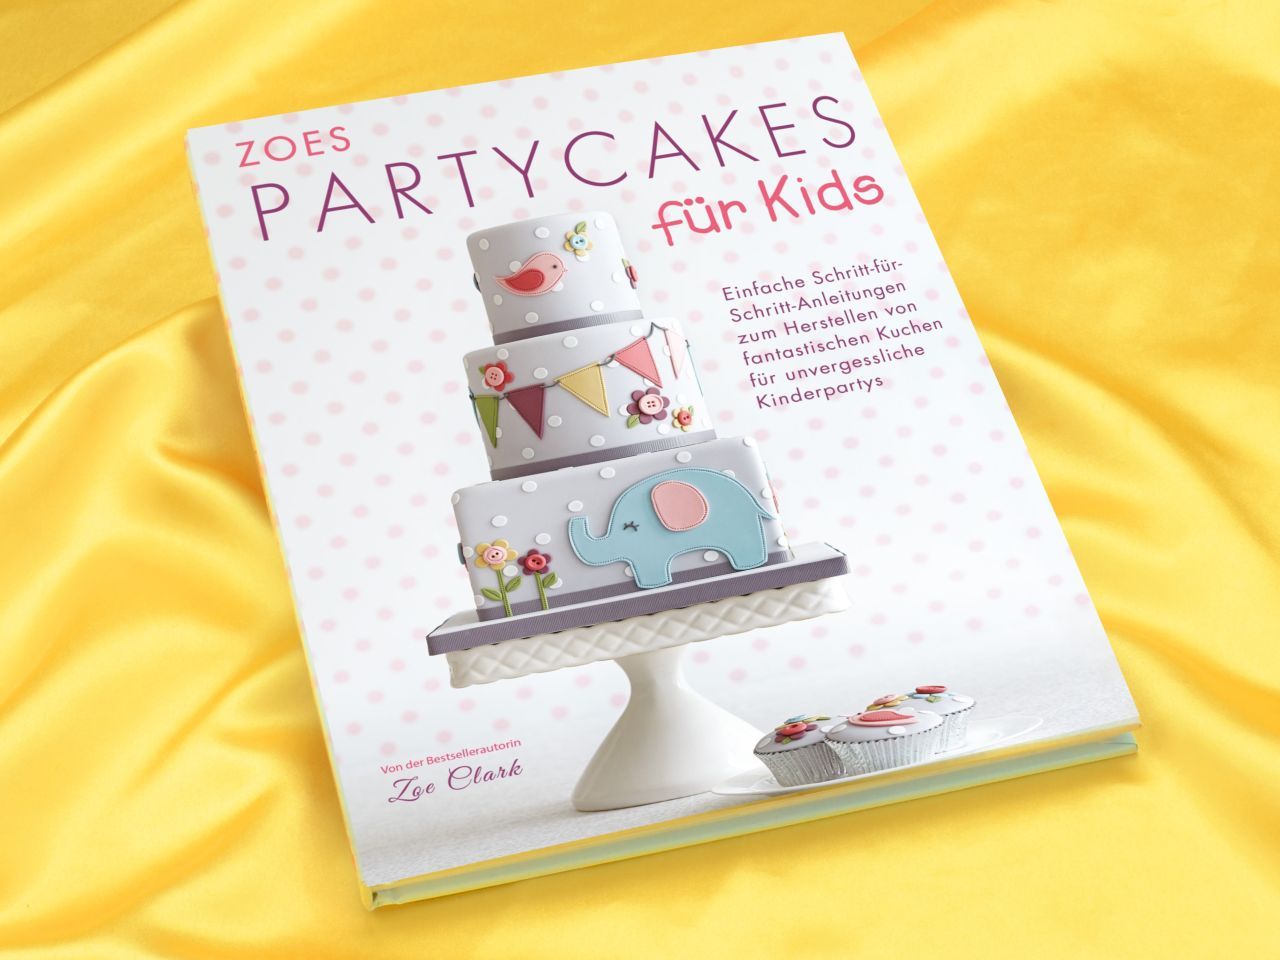 Zoes Partycakes für Kids - Zoe Clark von Cake & Bake Verlag